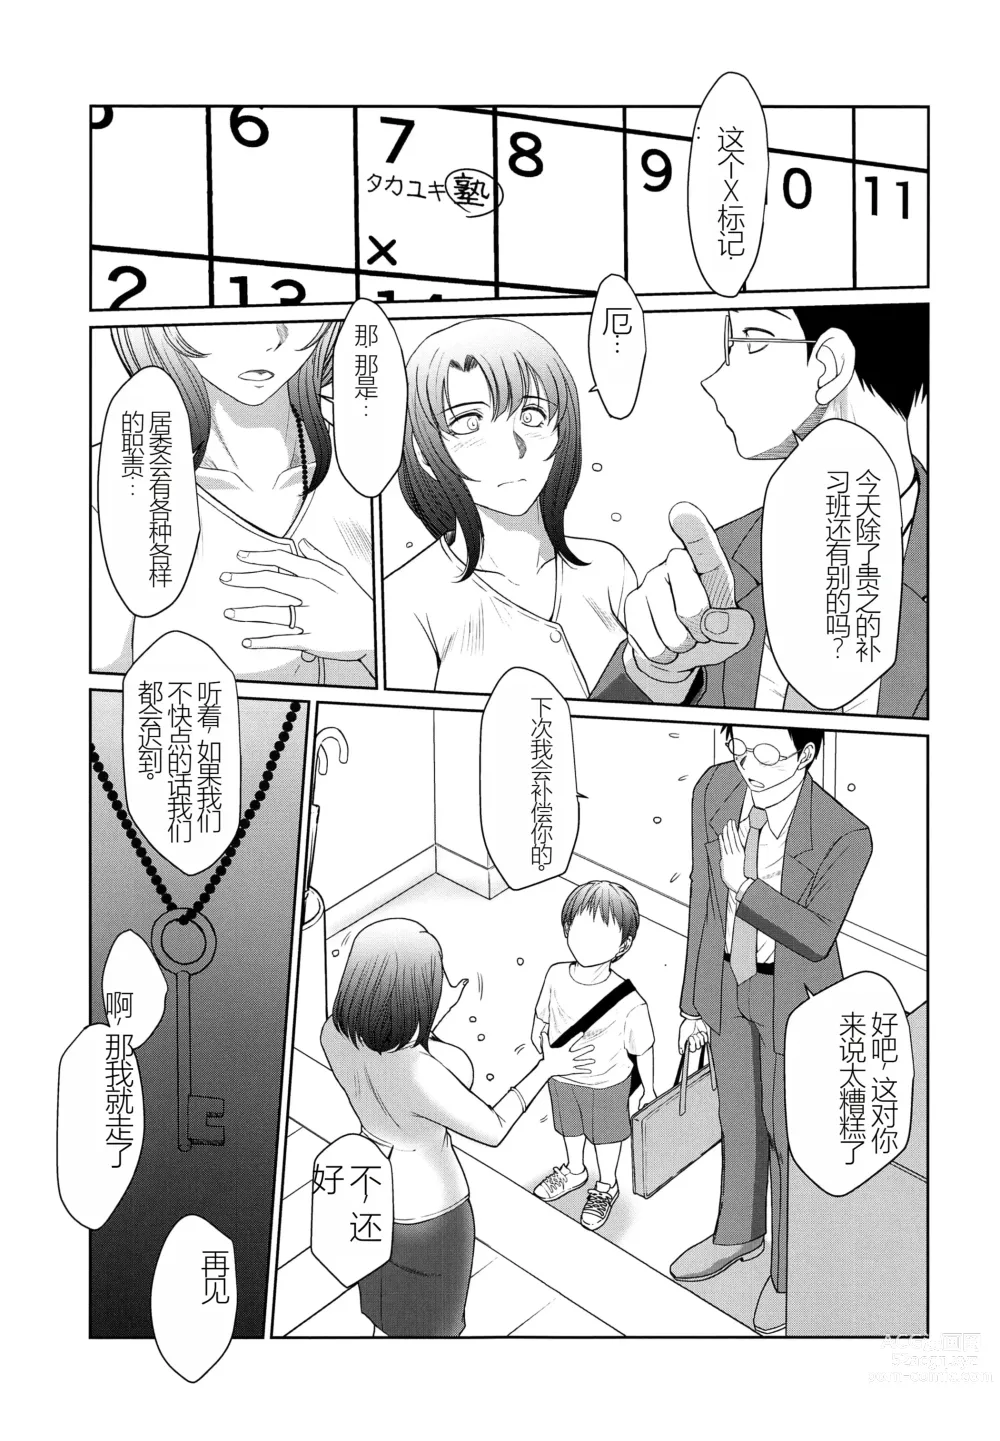 Page 4 of doujinshi Kagesawa Mura no Akai Kagi